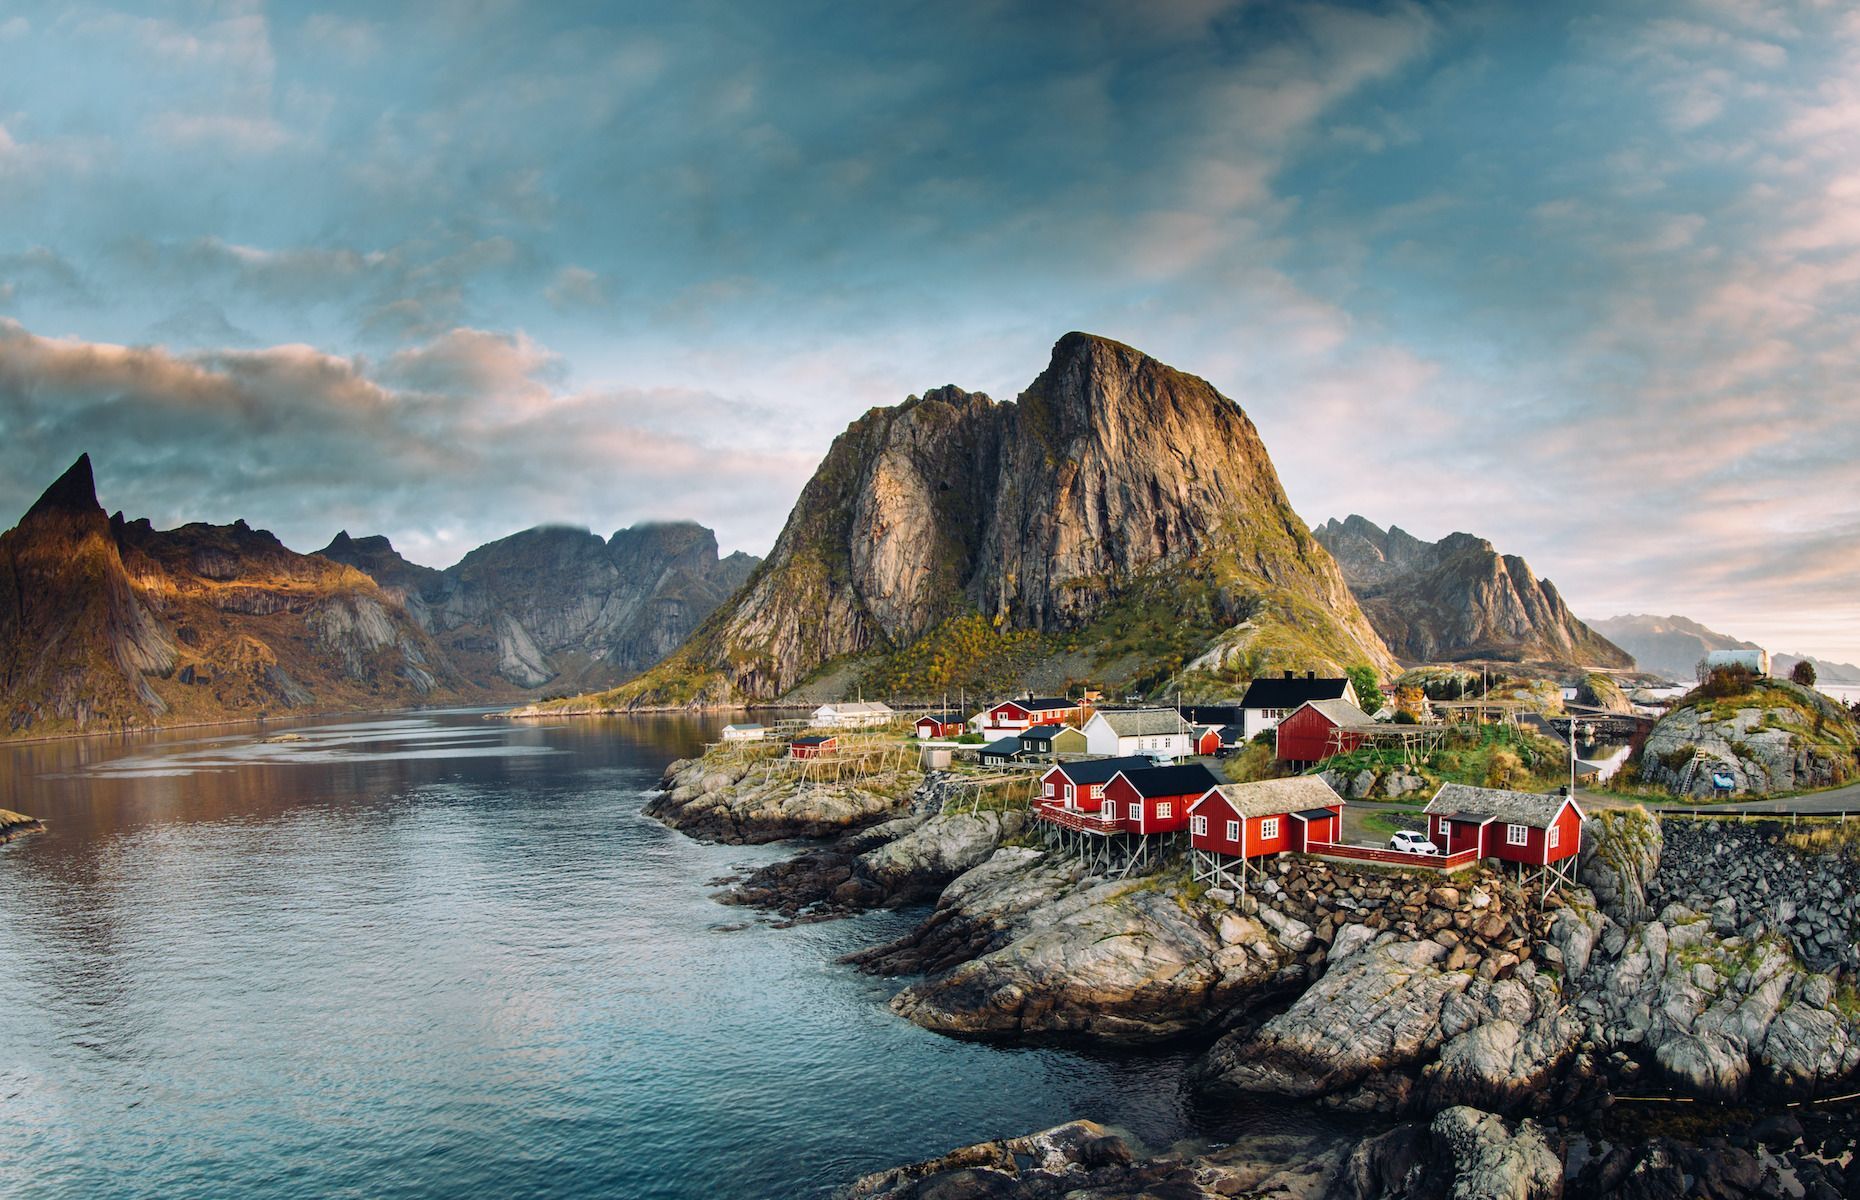 <p>Les <a href="https://www.lofotenlights.com/informations-generales/?lang=fr">îles Lofoten</a>, nichées au large de la <a href="https://www.visitnorway.fr/destinations-norvege/region-nord/iles-lofoten/">Norvège</a>, offrent une expérience arctique unique et des paysages surprenants. Les activités phares incluent la randonnée le long des sentiers côtiers pour admirer les fjords et les montagnes escarpées, ainsi que la pêche en mer pour capturer le fameux cabillaud arctique. Les villages de pêcheurs comme Reine et Hamnøy offrent un aperçu de la vie traditionnelle norvégienne, avec leurs maisons colorées et leurs ports illuminés. Les îles Lofoten sont également réputées pour leurs aurores boréales en hiver et pour le soleil de minuit en été, offrant une expérience naturelle inoubliable.</p>